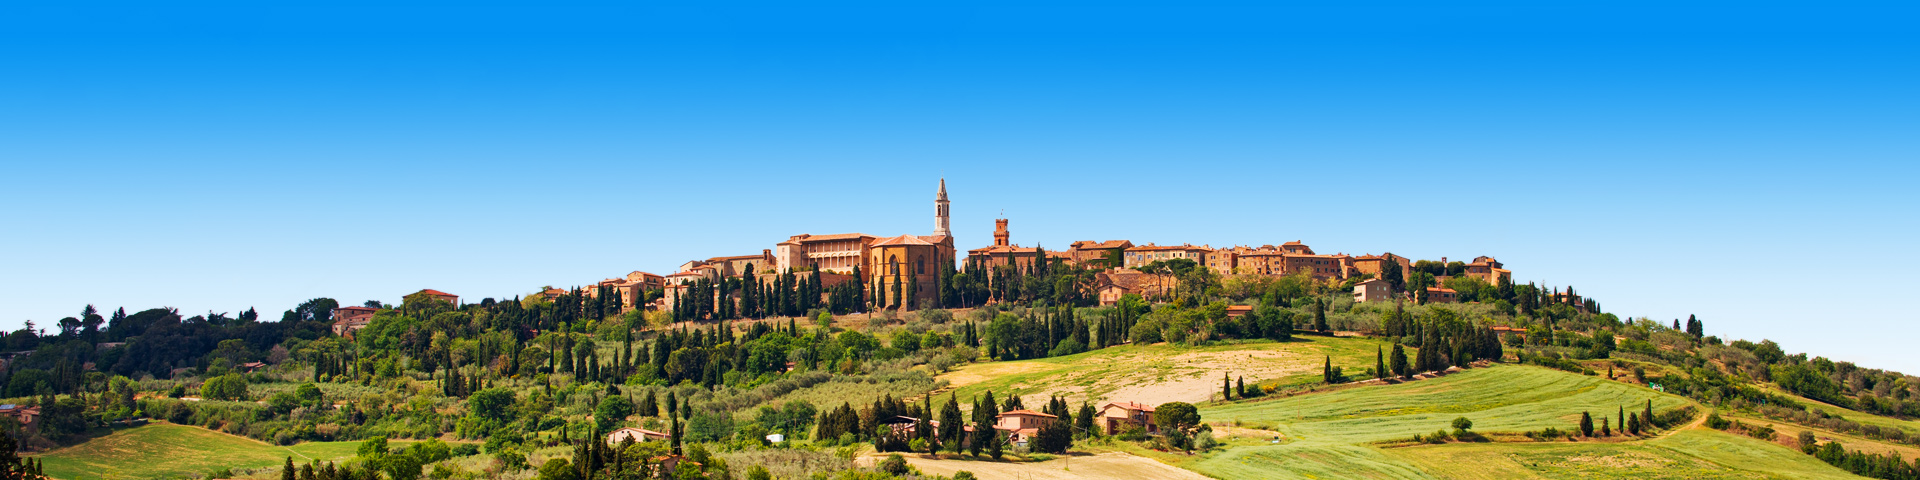 Bekende stadje San Gimignano in Toscane op de heuvel